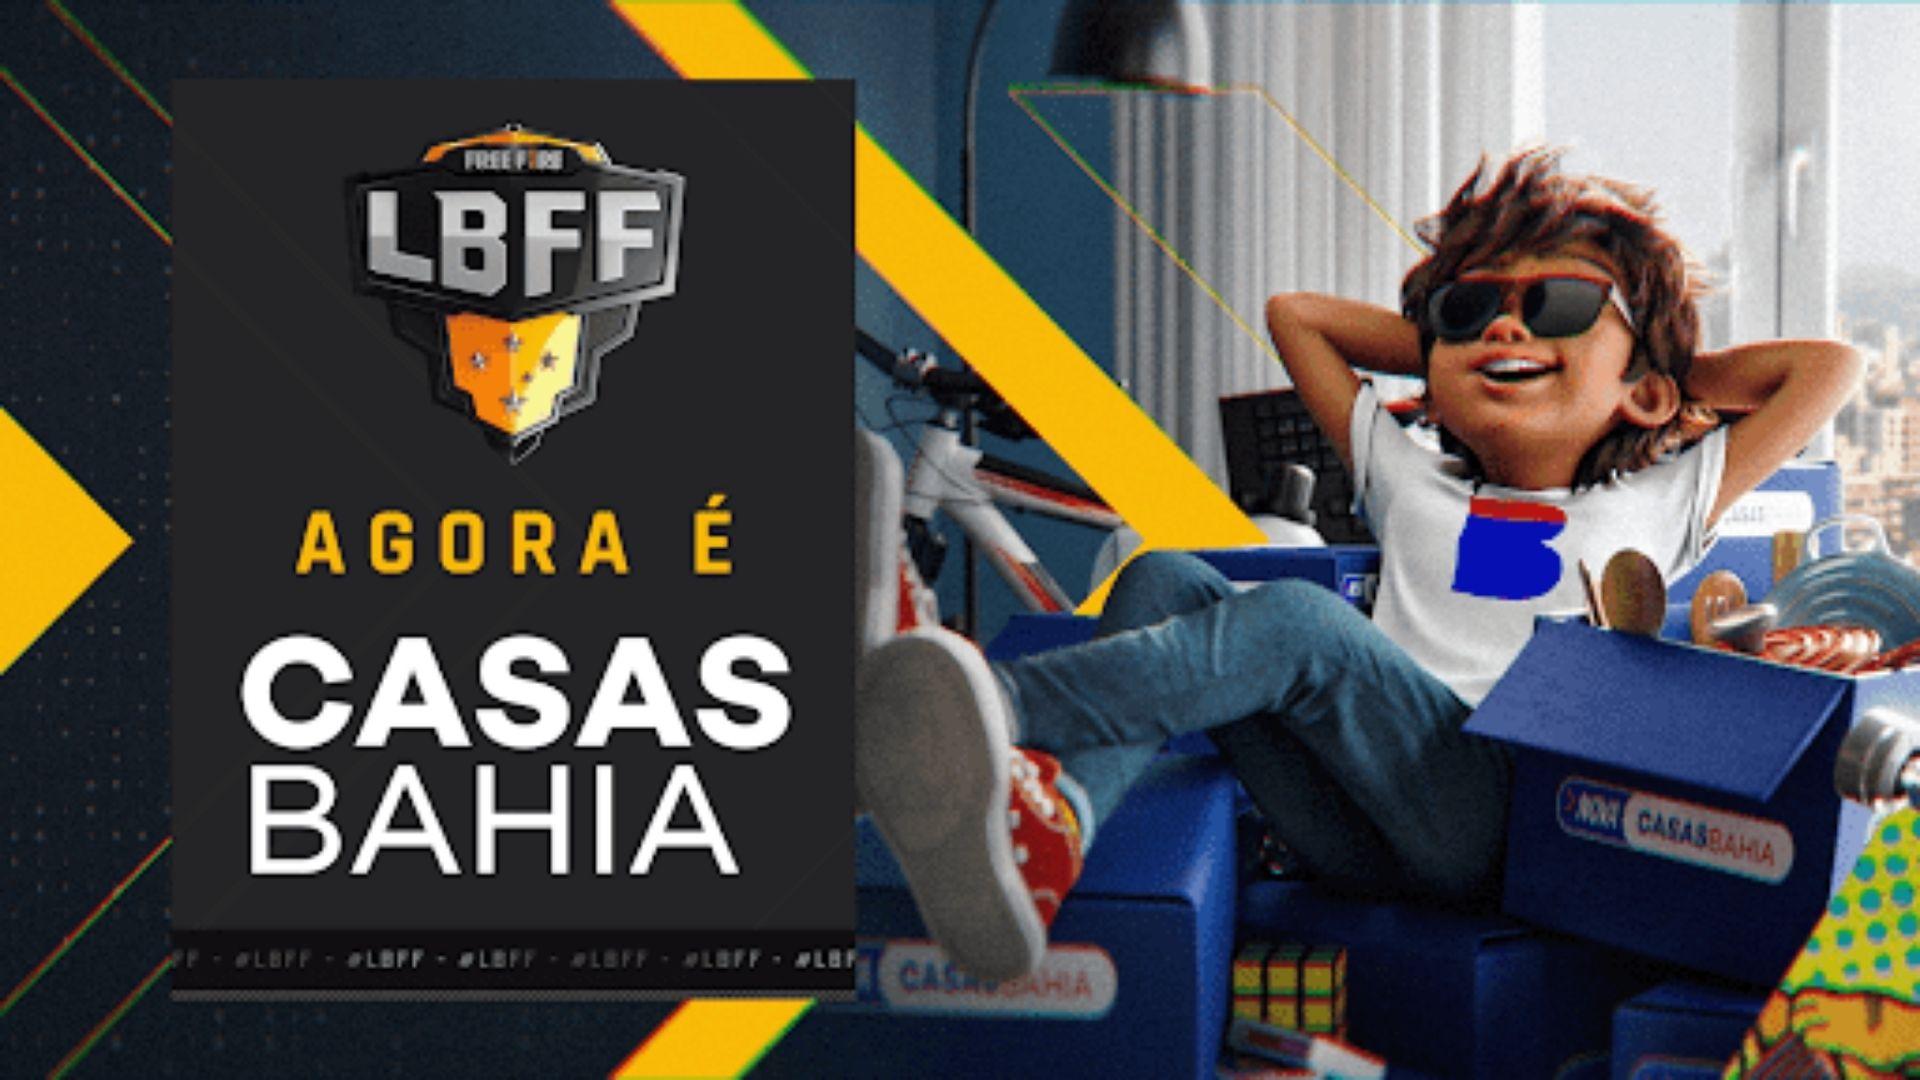 Liga Brasileira de Free Fire (LBFF) tem Casas Bahia como nova patrocinadora